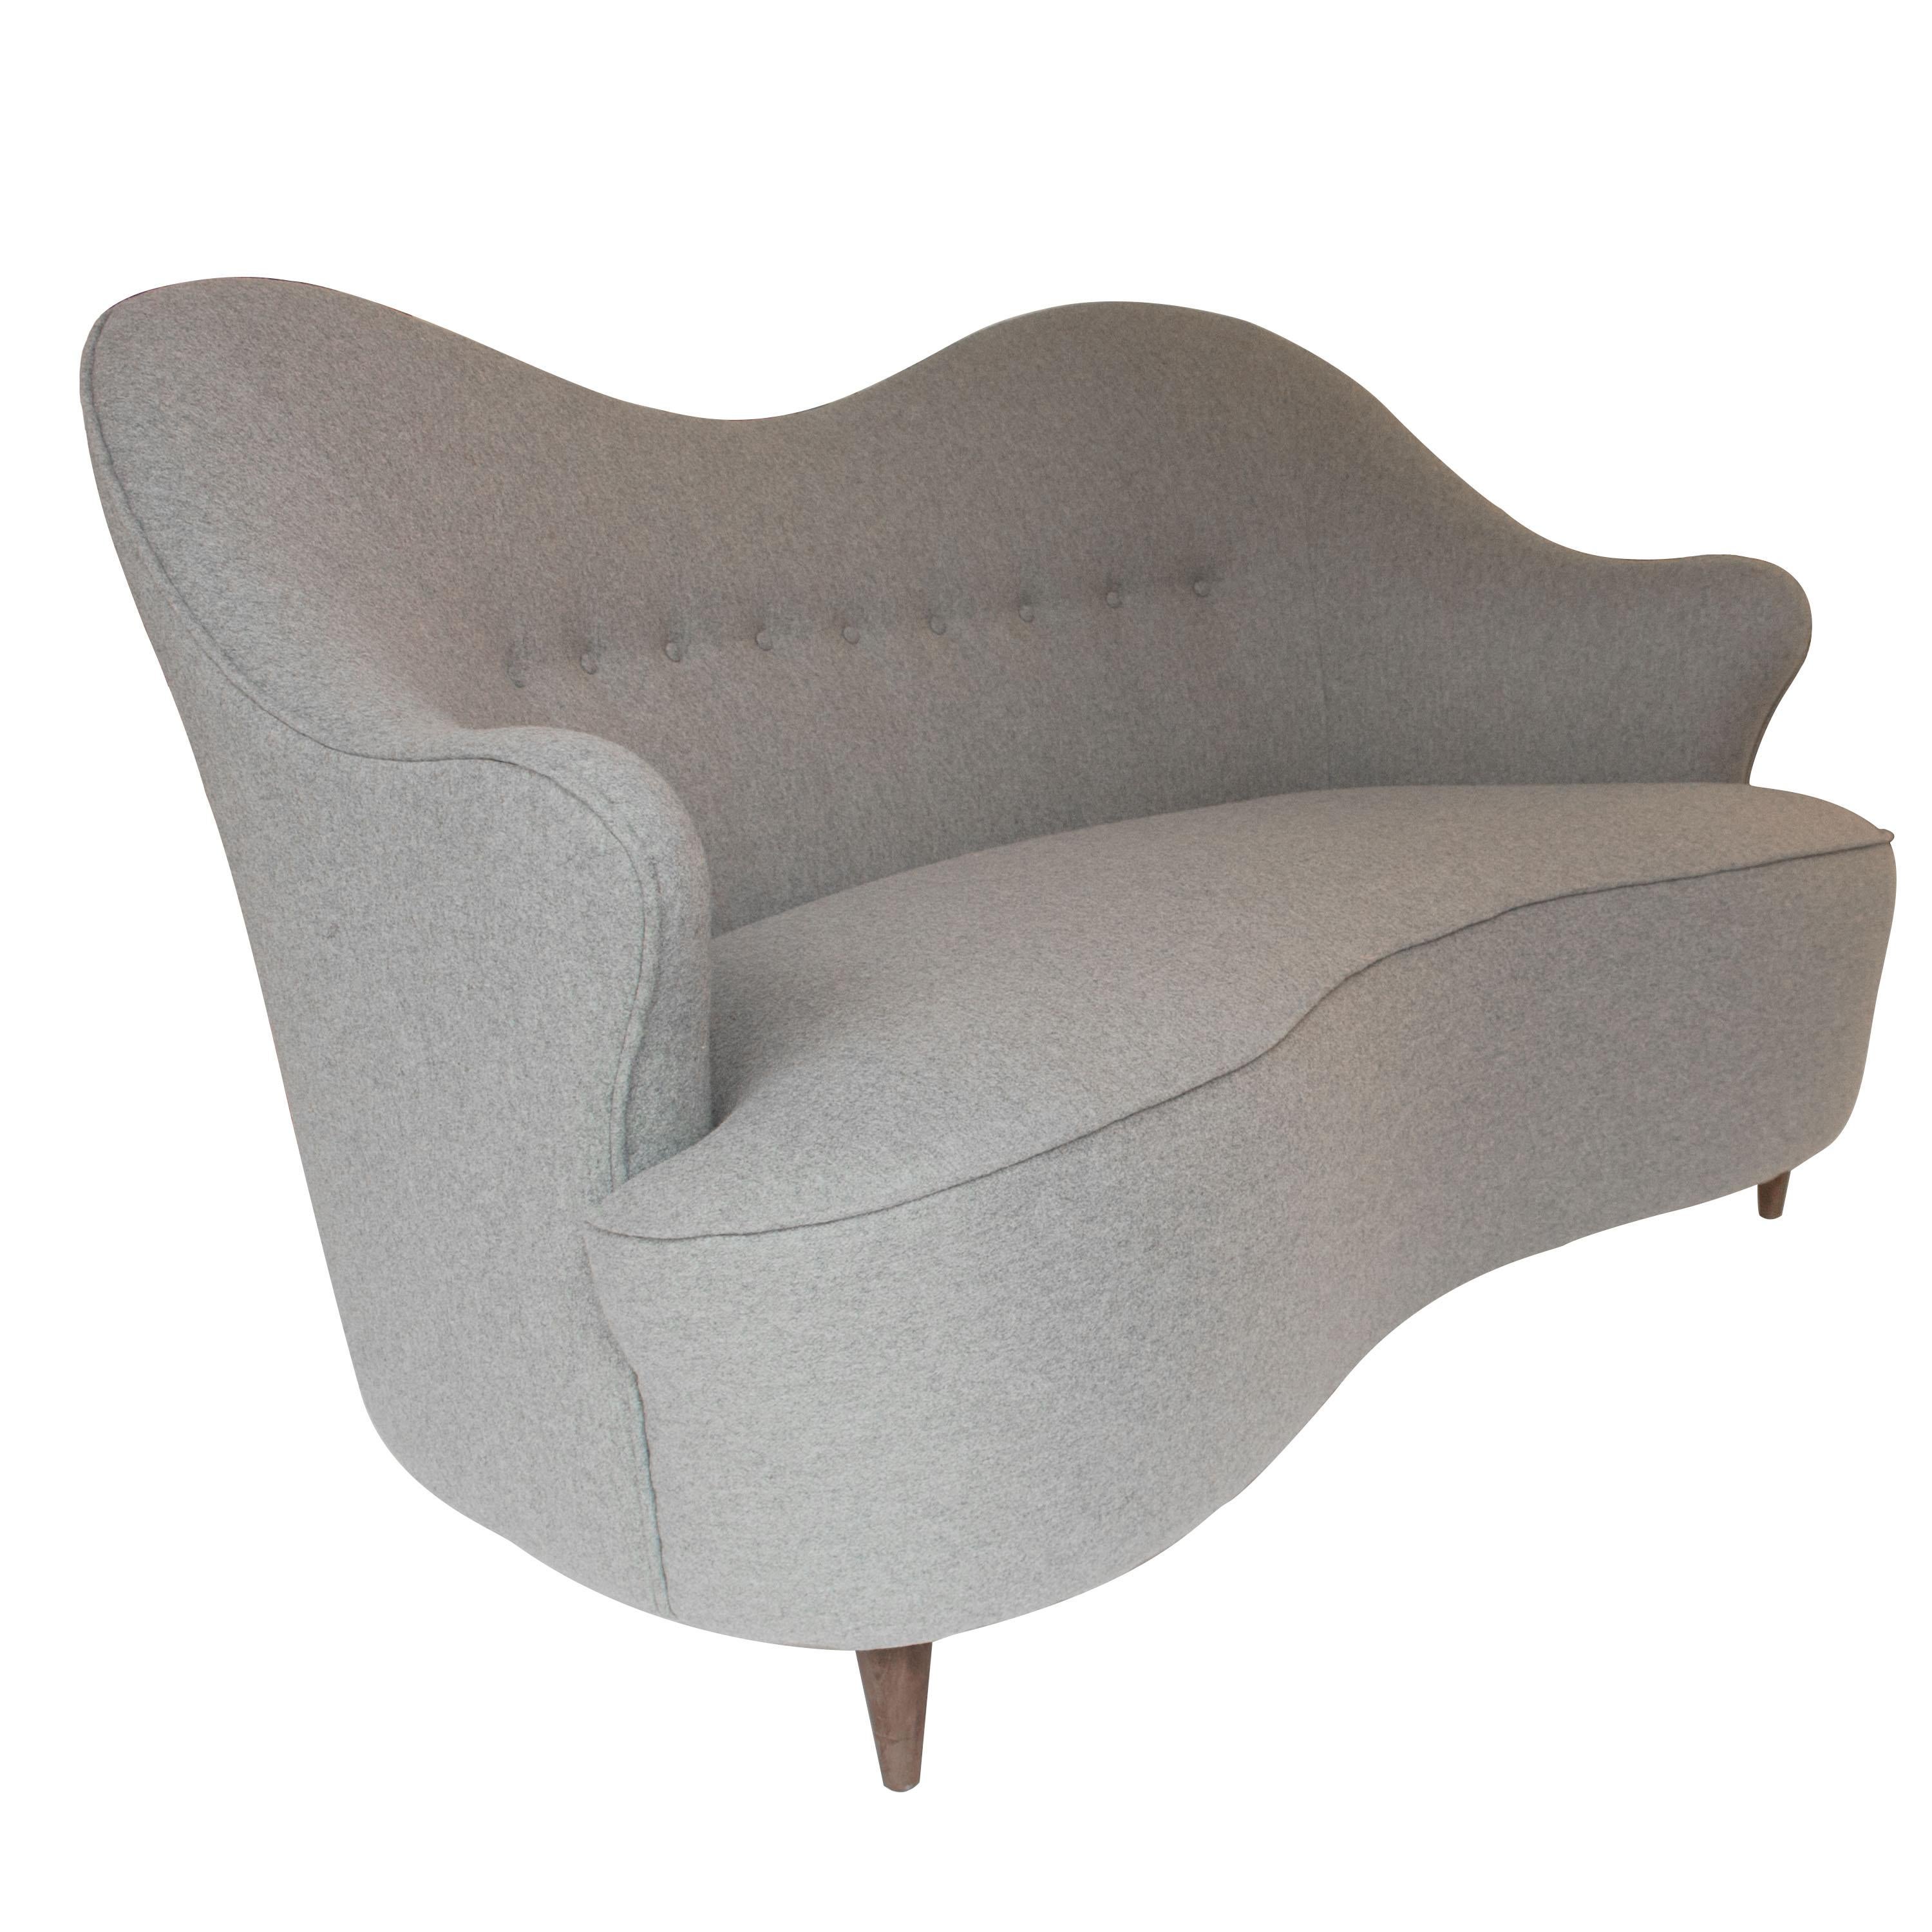 Zweisitziges Sofa, das Finn Juhls zugeschrieben wird und in den 50er Jahren in Italien hergestellt wurde. 
Gefertigt aus Massivholz und mit grauem Wollfilz gepolstert. Klassische konische Beine aus Teakholz.